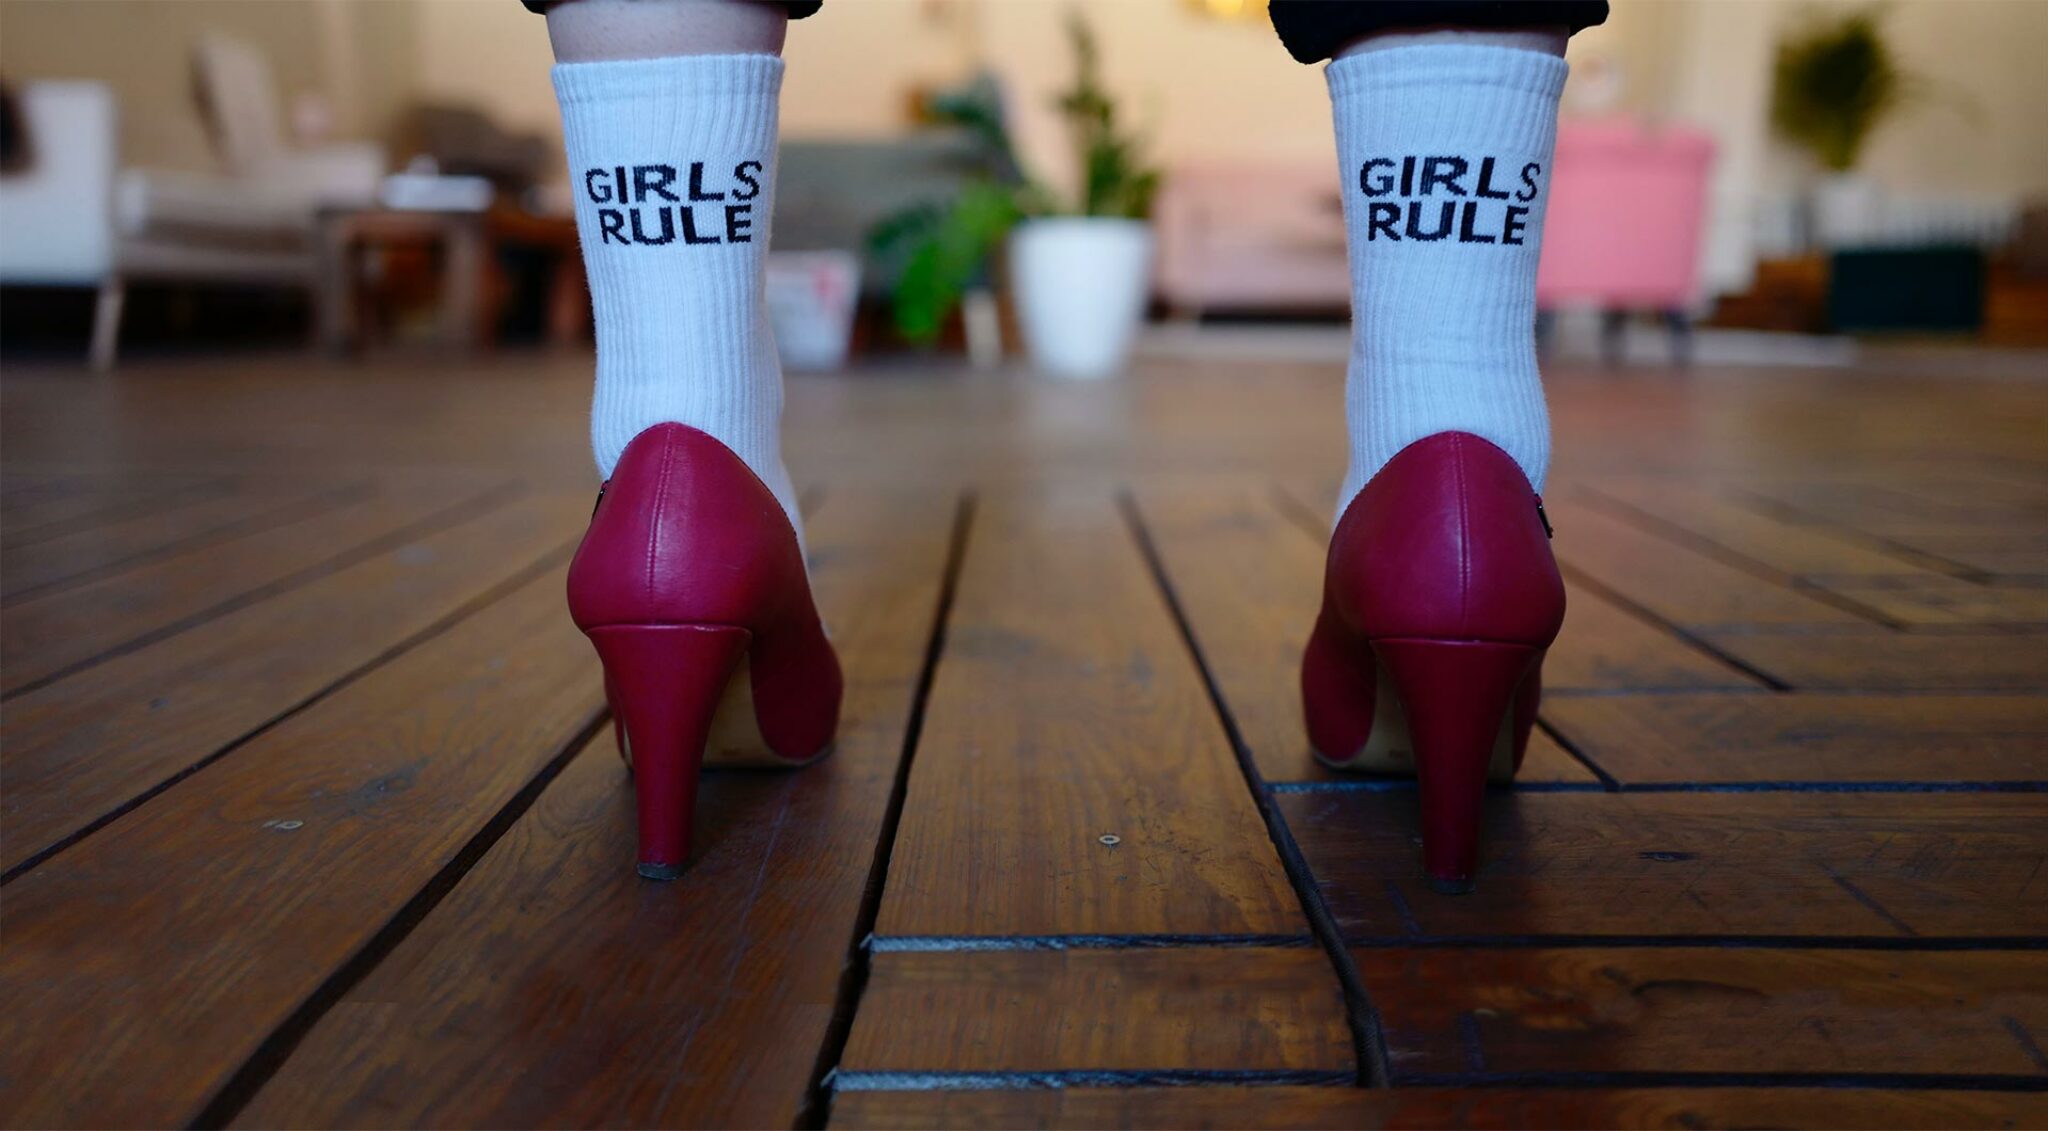 Frau in pinken High Heels trägt Socken mit Aufschrift "Girls rule".